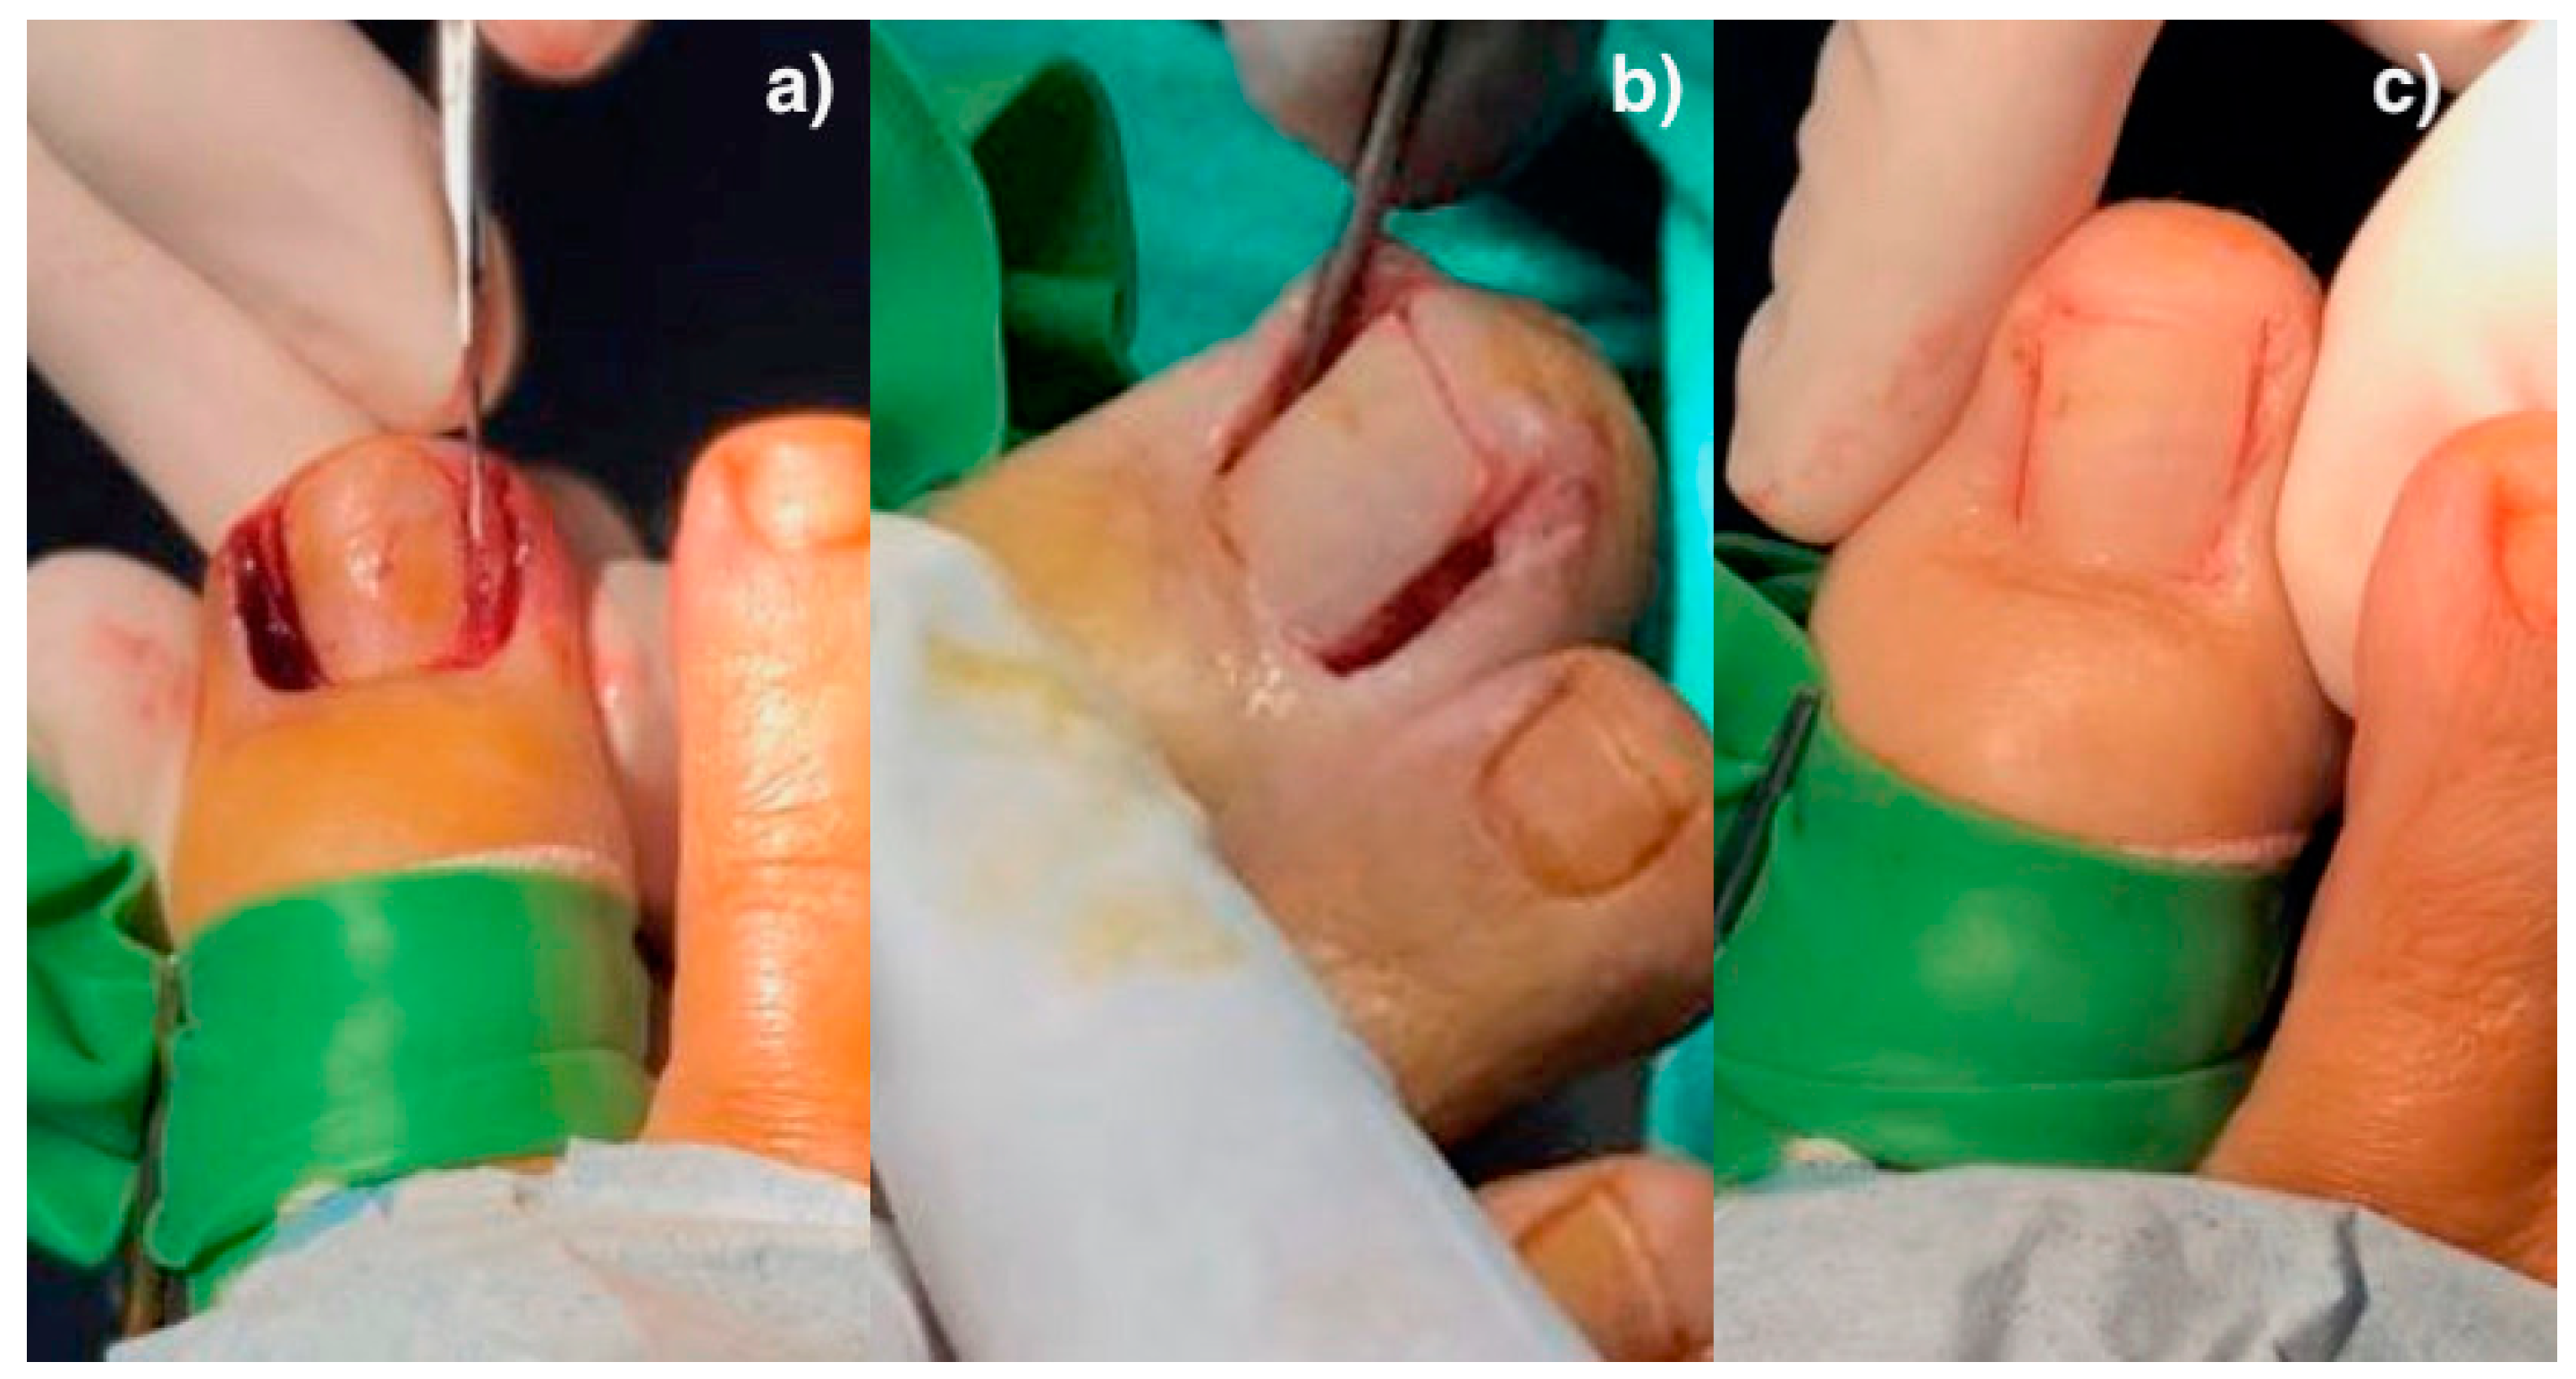 INGROWN TOENAIL TREATMENT | Ingrowing Toe Nail Correction Tool Pedicure  Fungal | eBay